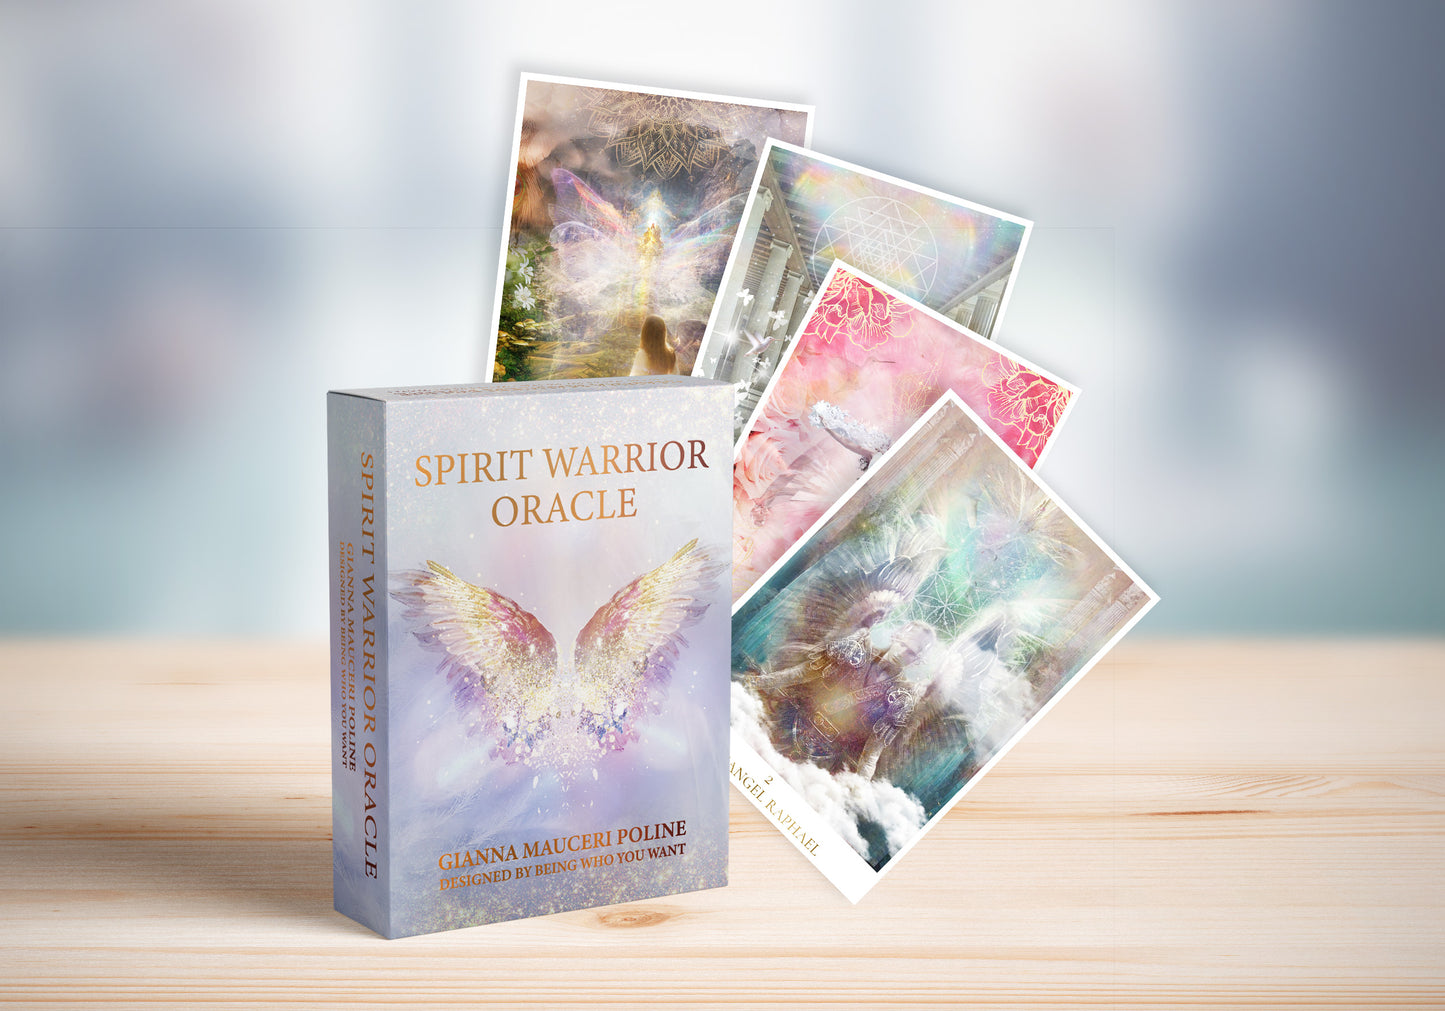 Spirit Warrior Oracle Cards